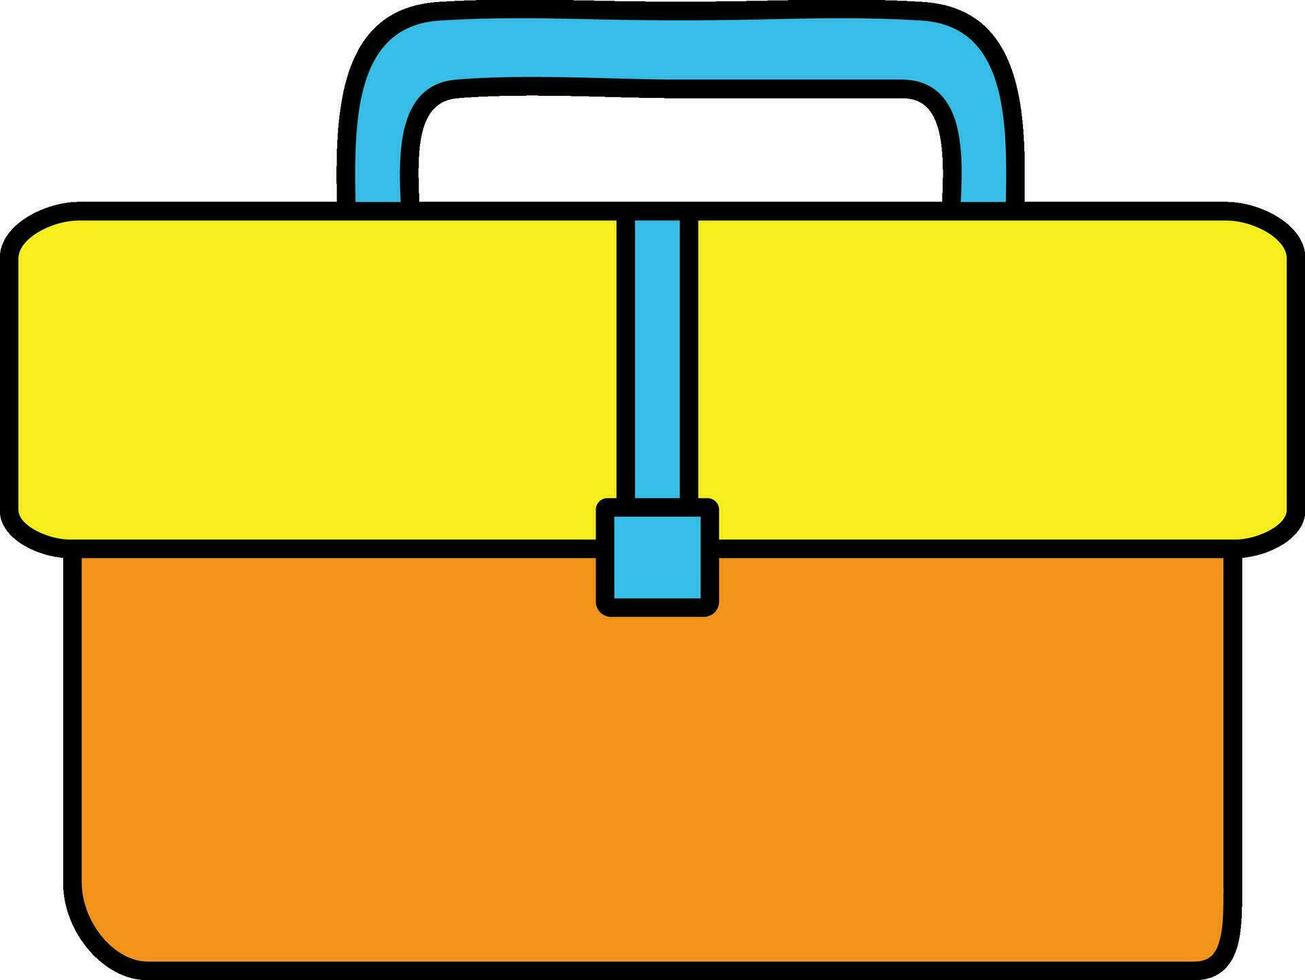 Handtasche im Orange und Gelb, Blau Farbe. vektor